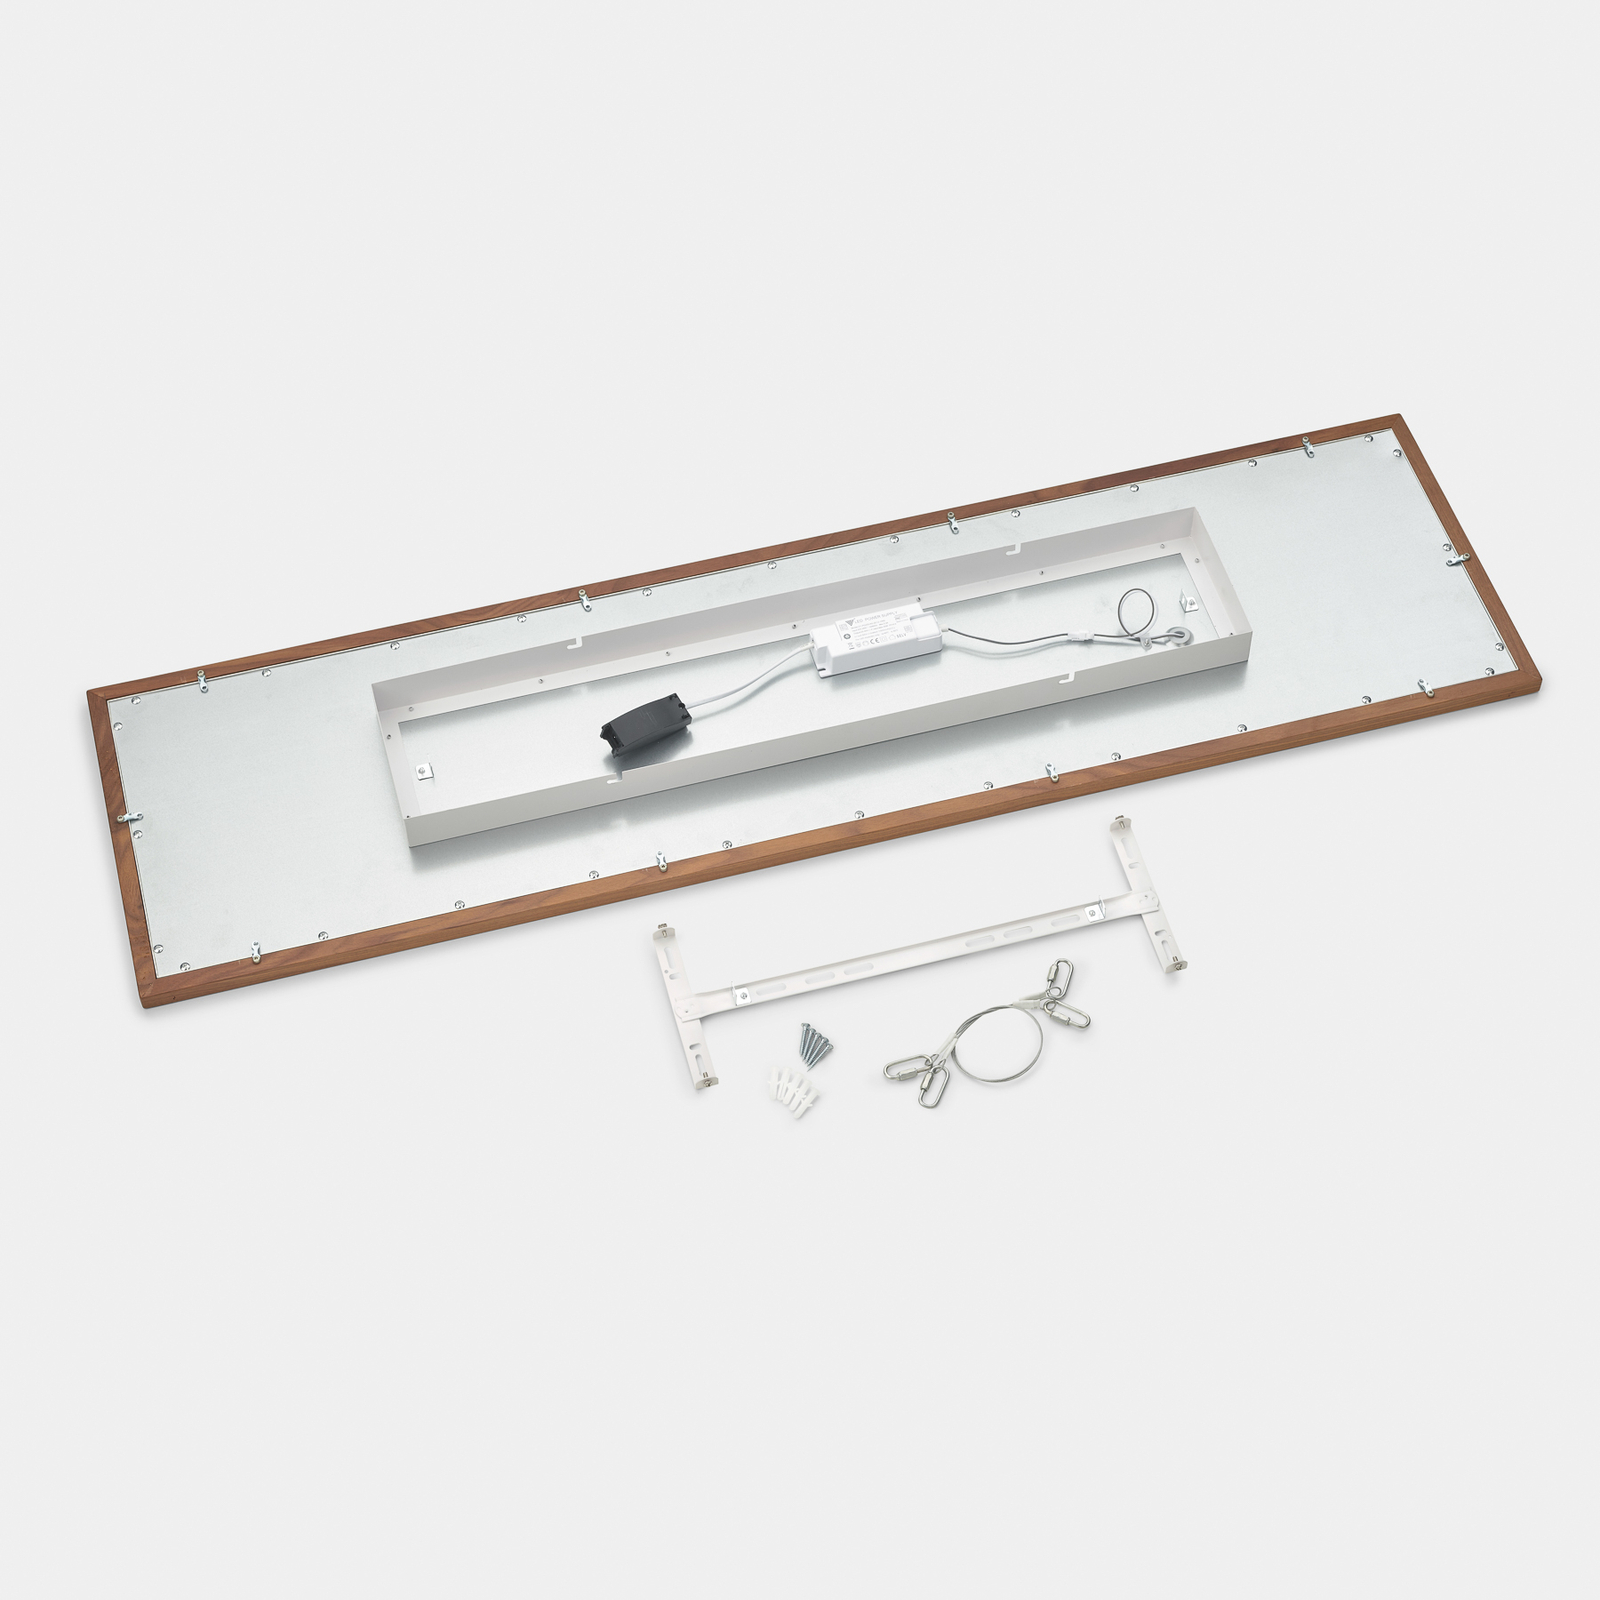 Quitani Aurinor LED paneel, walnoot, 125 cm